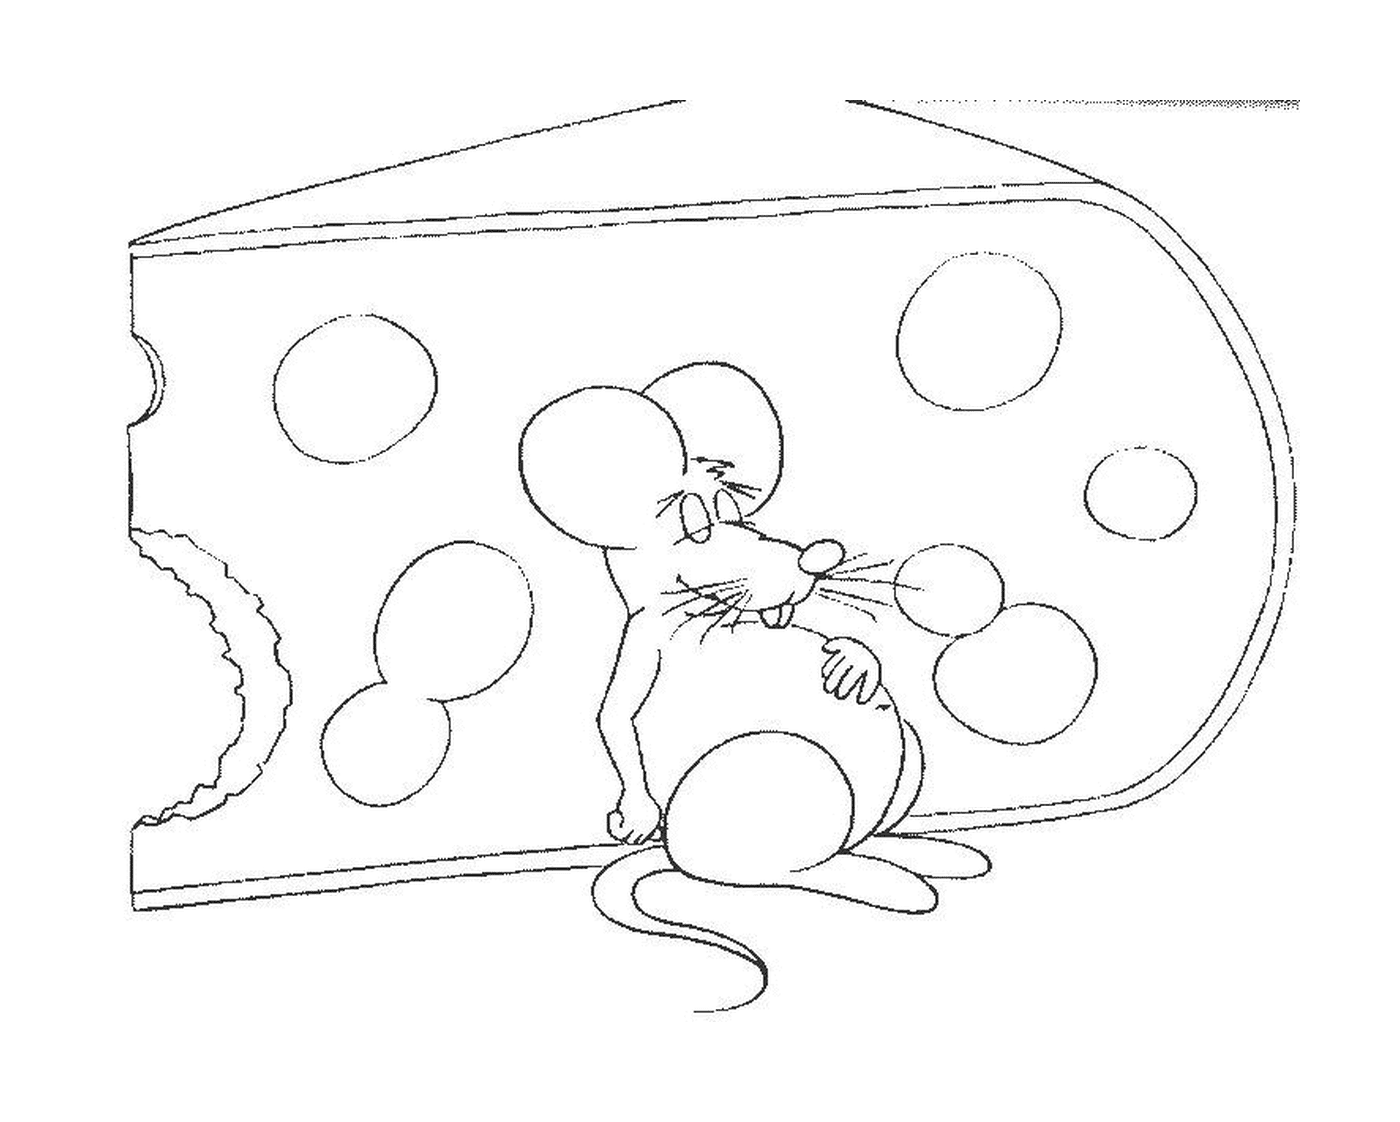  Um rato com um grande pedaço de queijo 